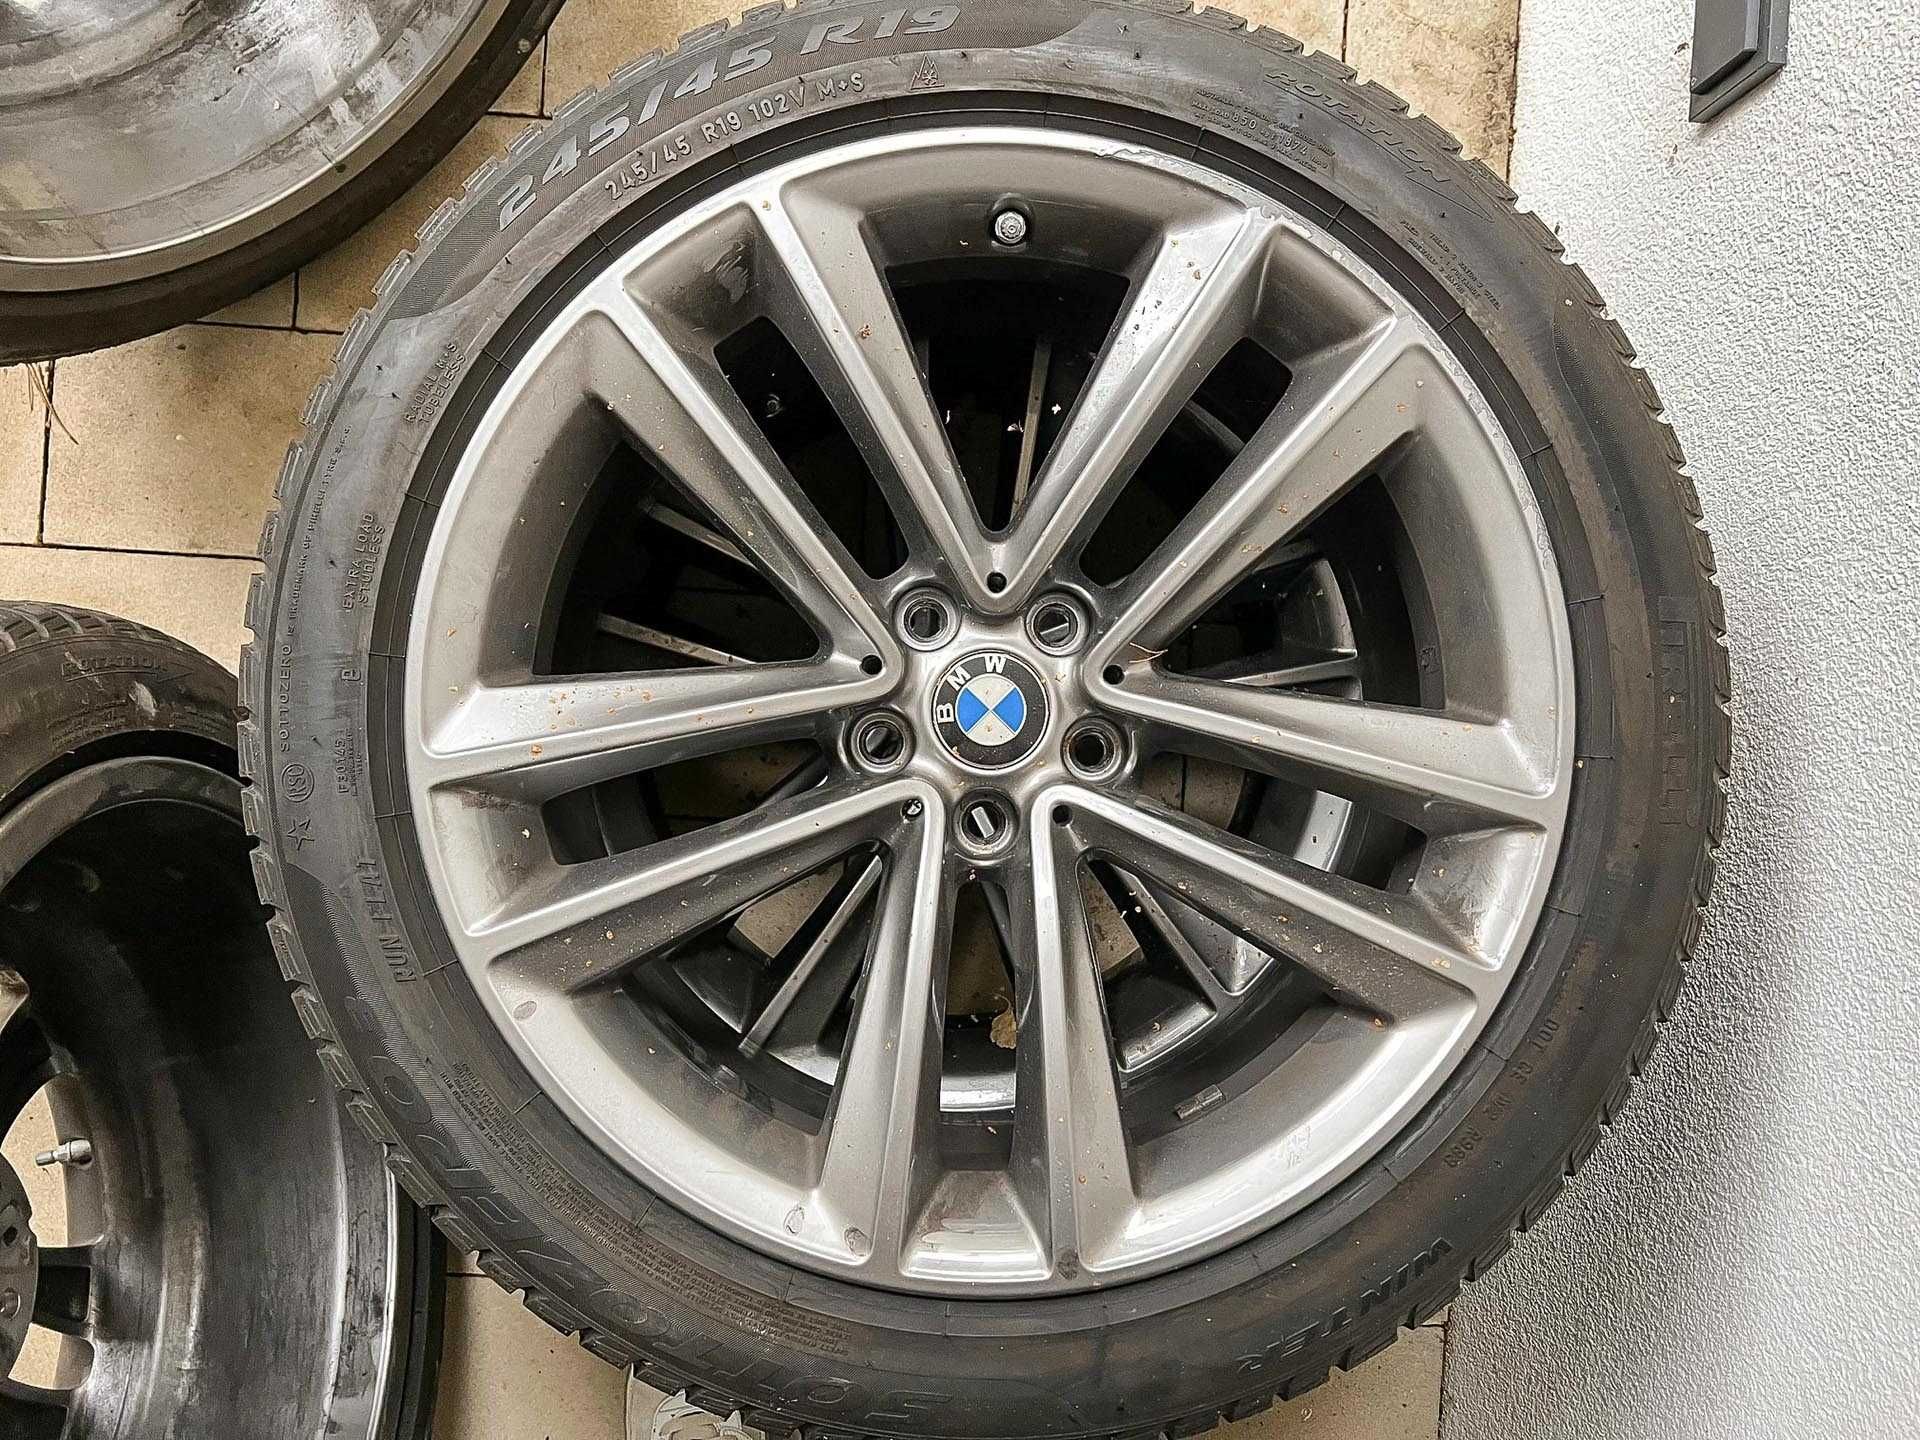 BMW - felgi Double Spoke 630 19" 5x112 + Pirelli 245/45 R19 102V zima